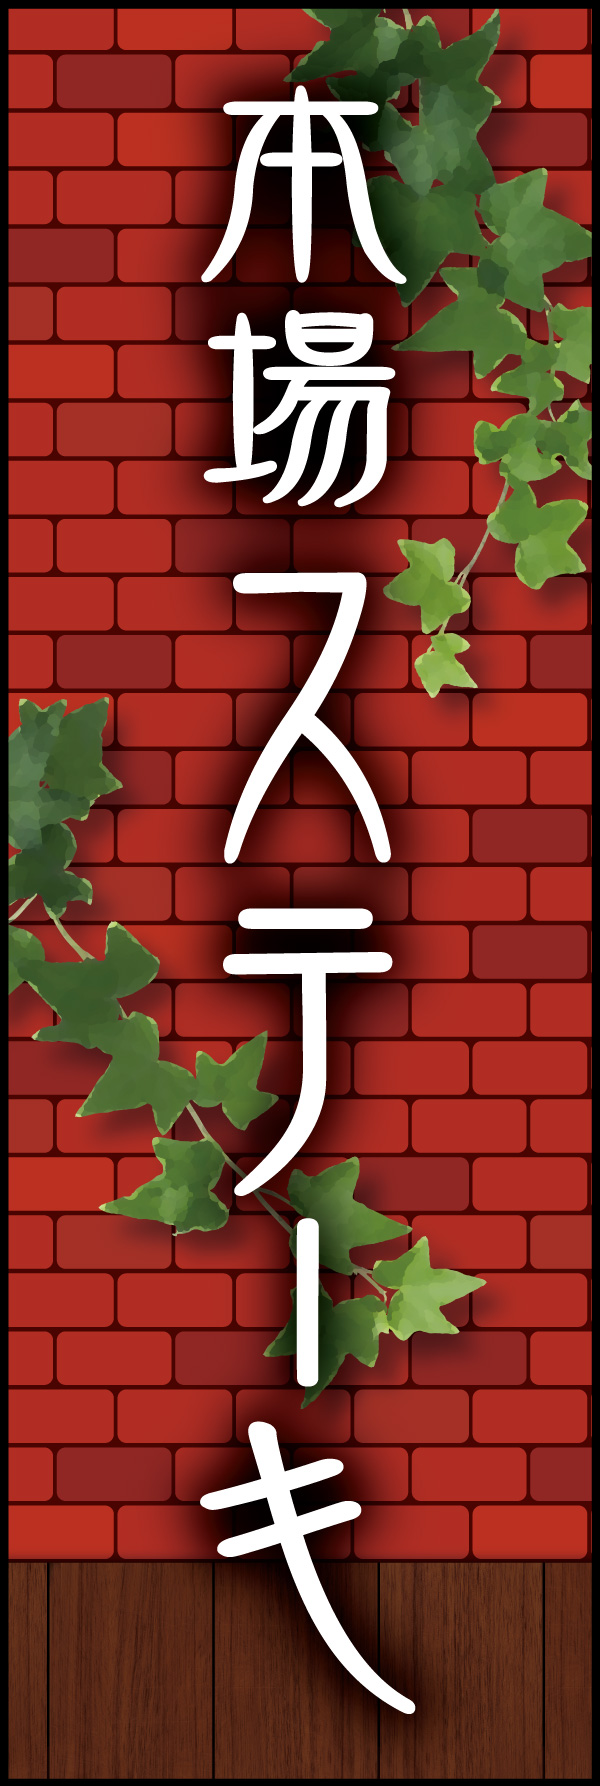 本場ステーキ 04「本場ステーキ」ののぼりです。赤煉瓦をバックに、懐かしい洋食屋さんをイメージしてデザインしました。(Y.M) 